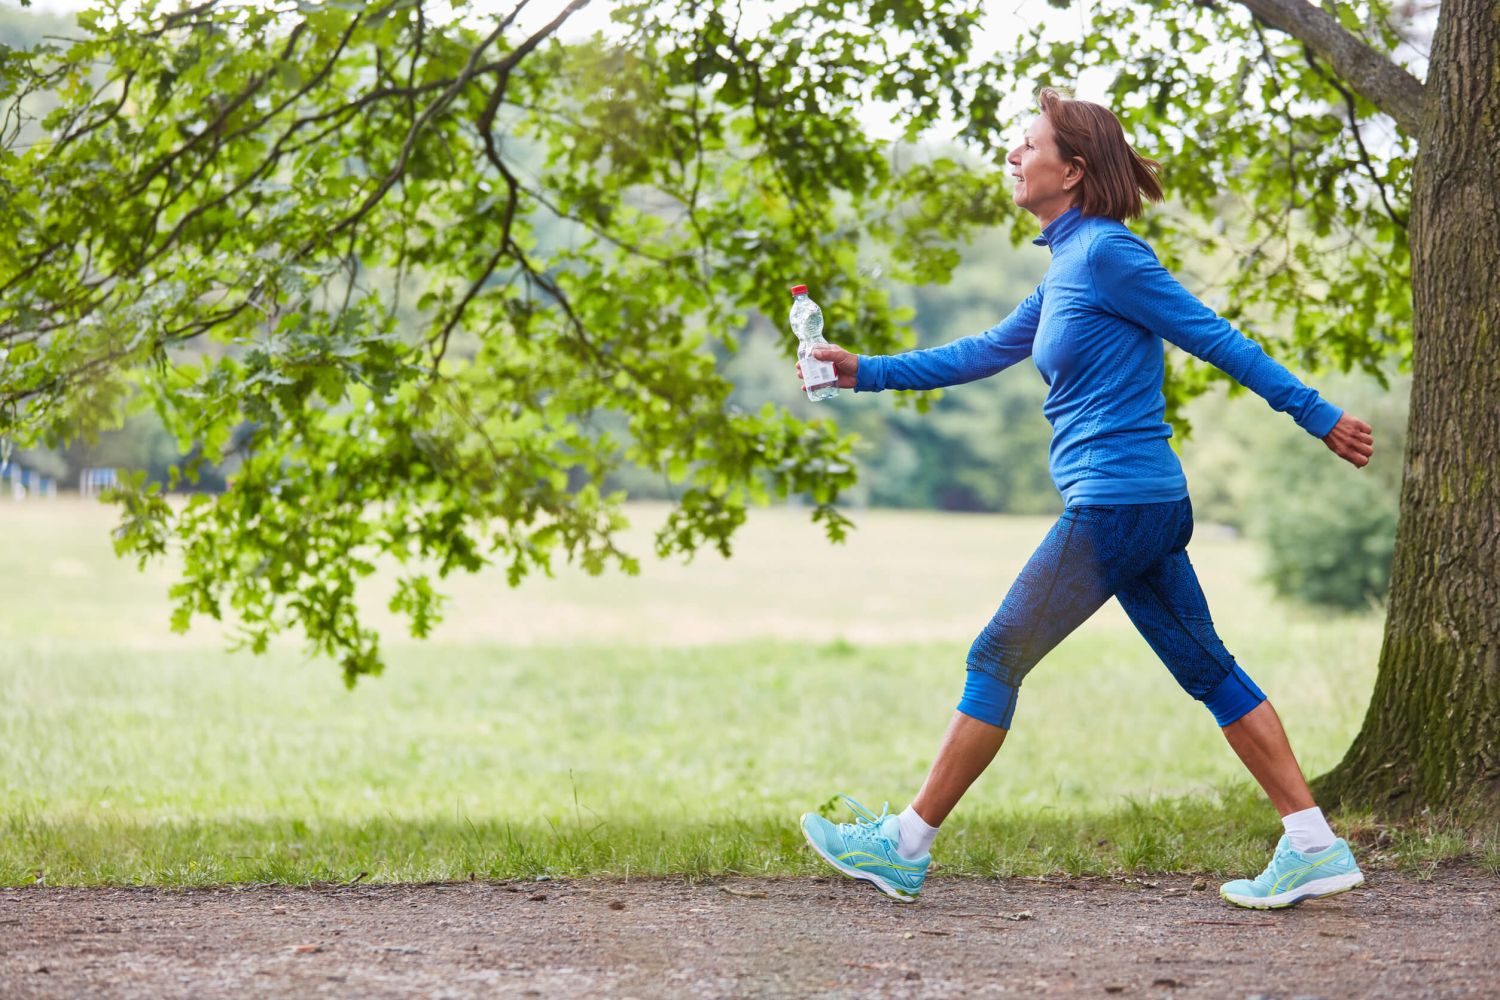 Andar puede ser una excelente forma de quemar calorías para aquellas personas que quieren mejorar su condición física y tener una vida saludable. 